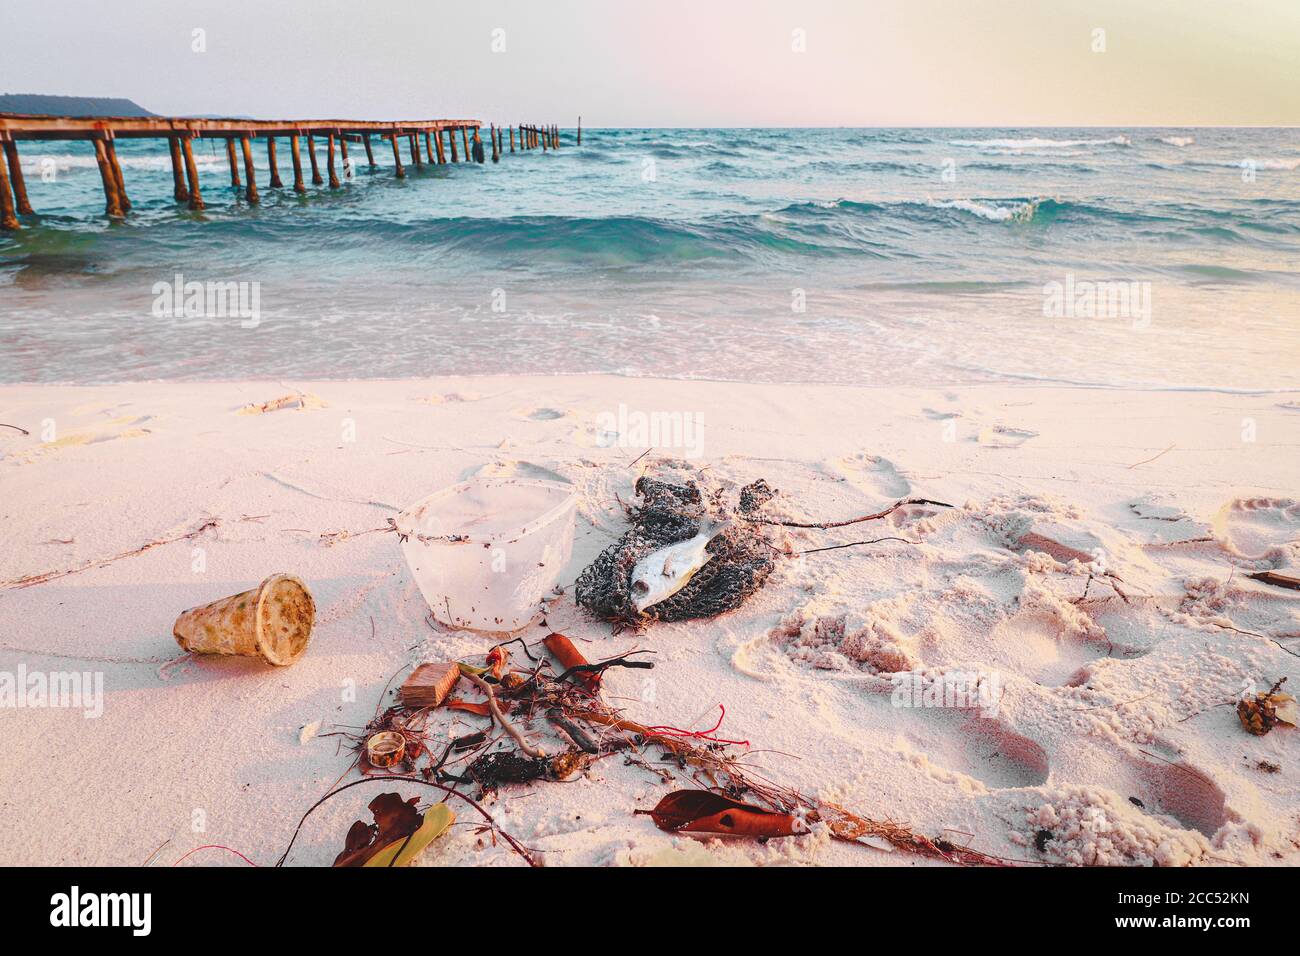 Déchets le long de la côte de la plage Soksan de l'île de Koh rong au Cambodge qui montre la pollution des océans, les dommages environnementaux et les déchets humains Banque D'Images